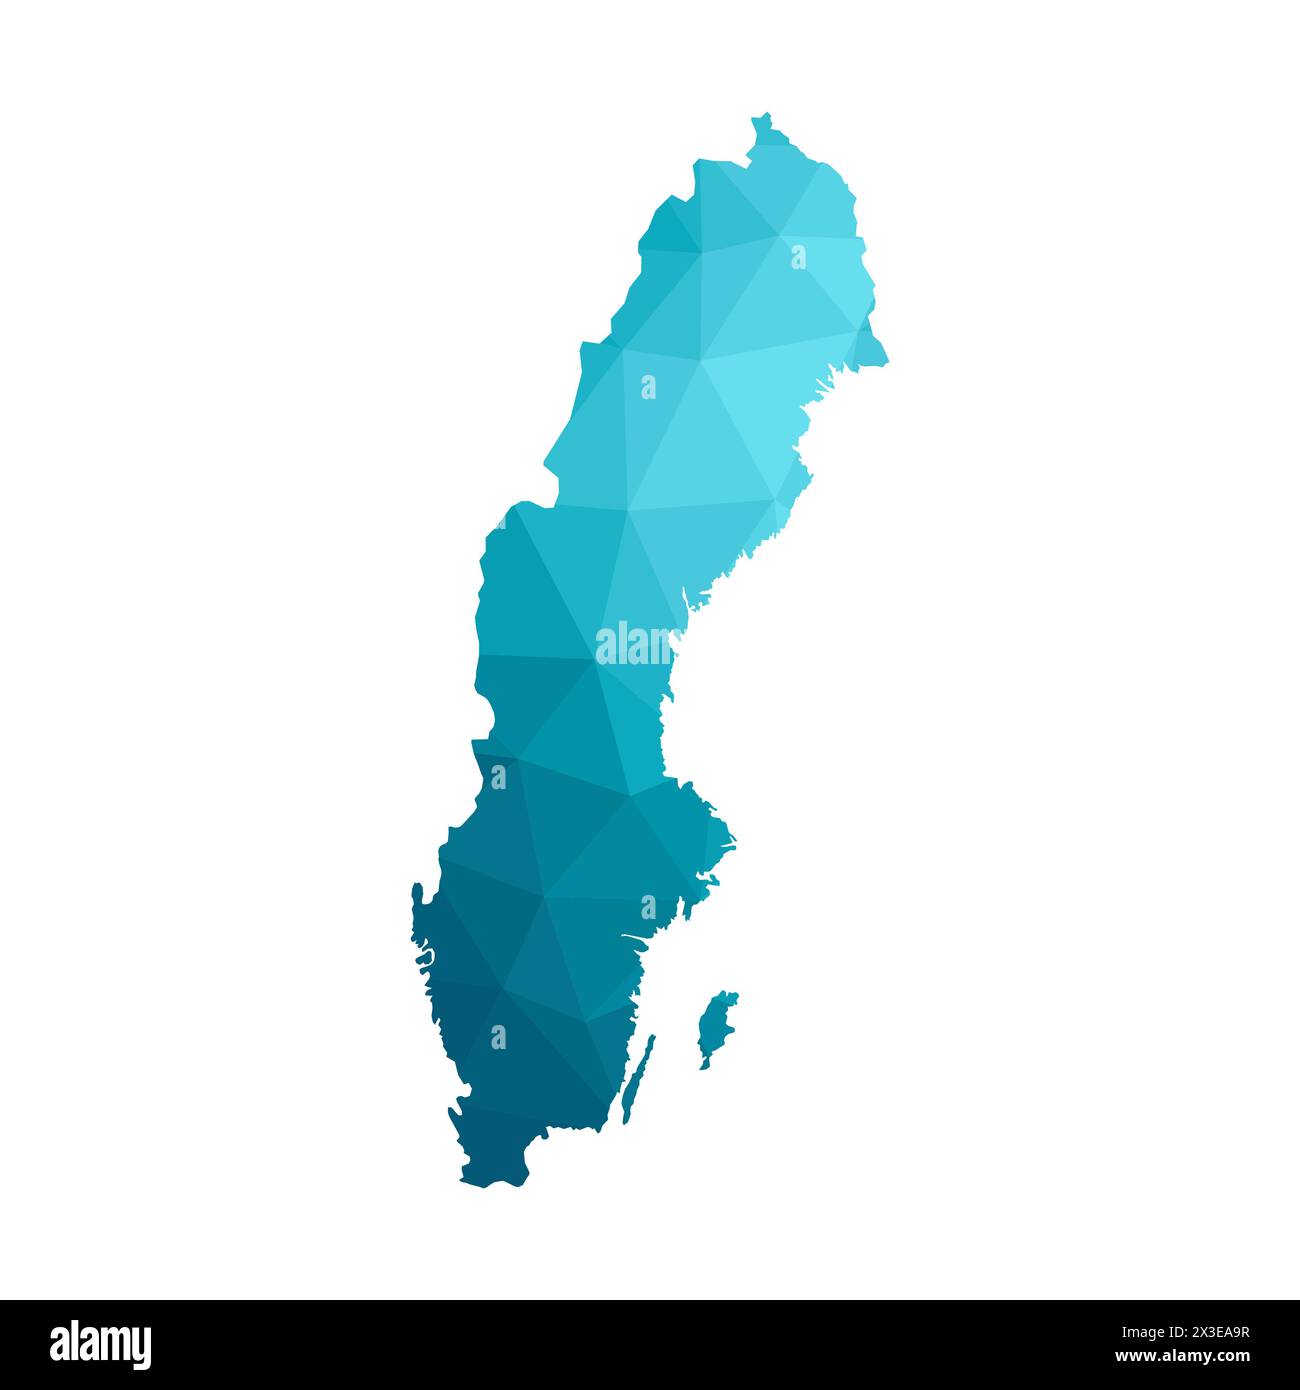 Illustrazione vettoriale con silhouette blu semplificata della mappa della Svezia. Stile triangolare poligonale. Sfondo bianco. Illustrazione Vettoriale